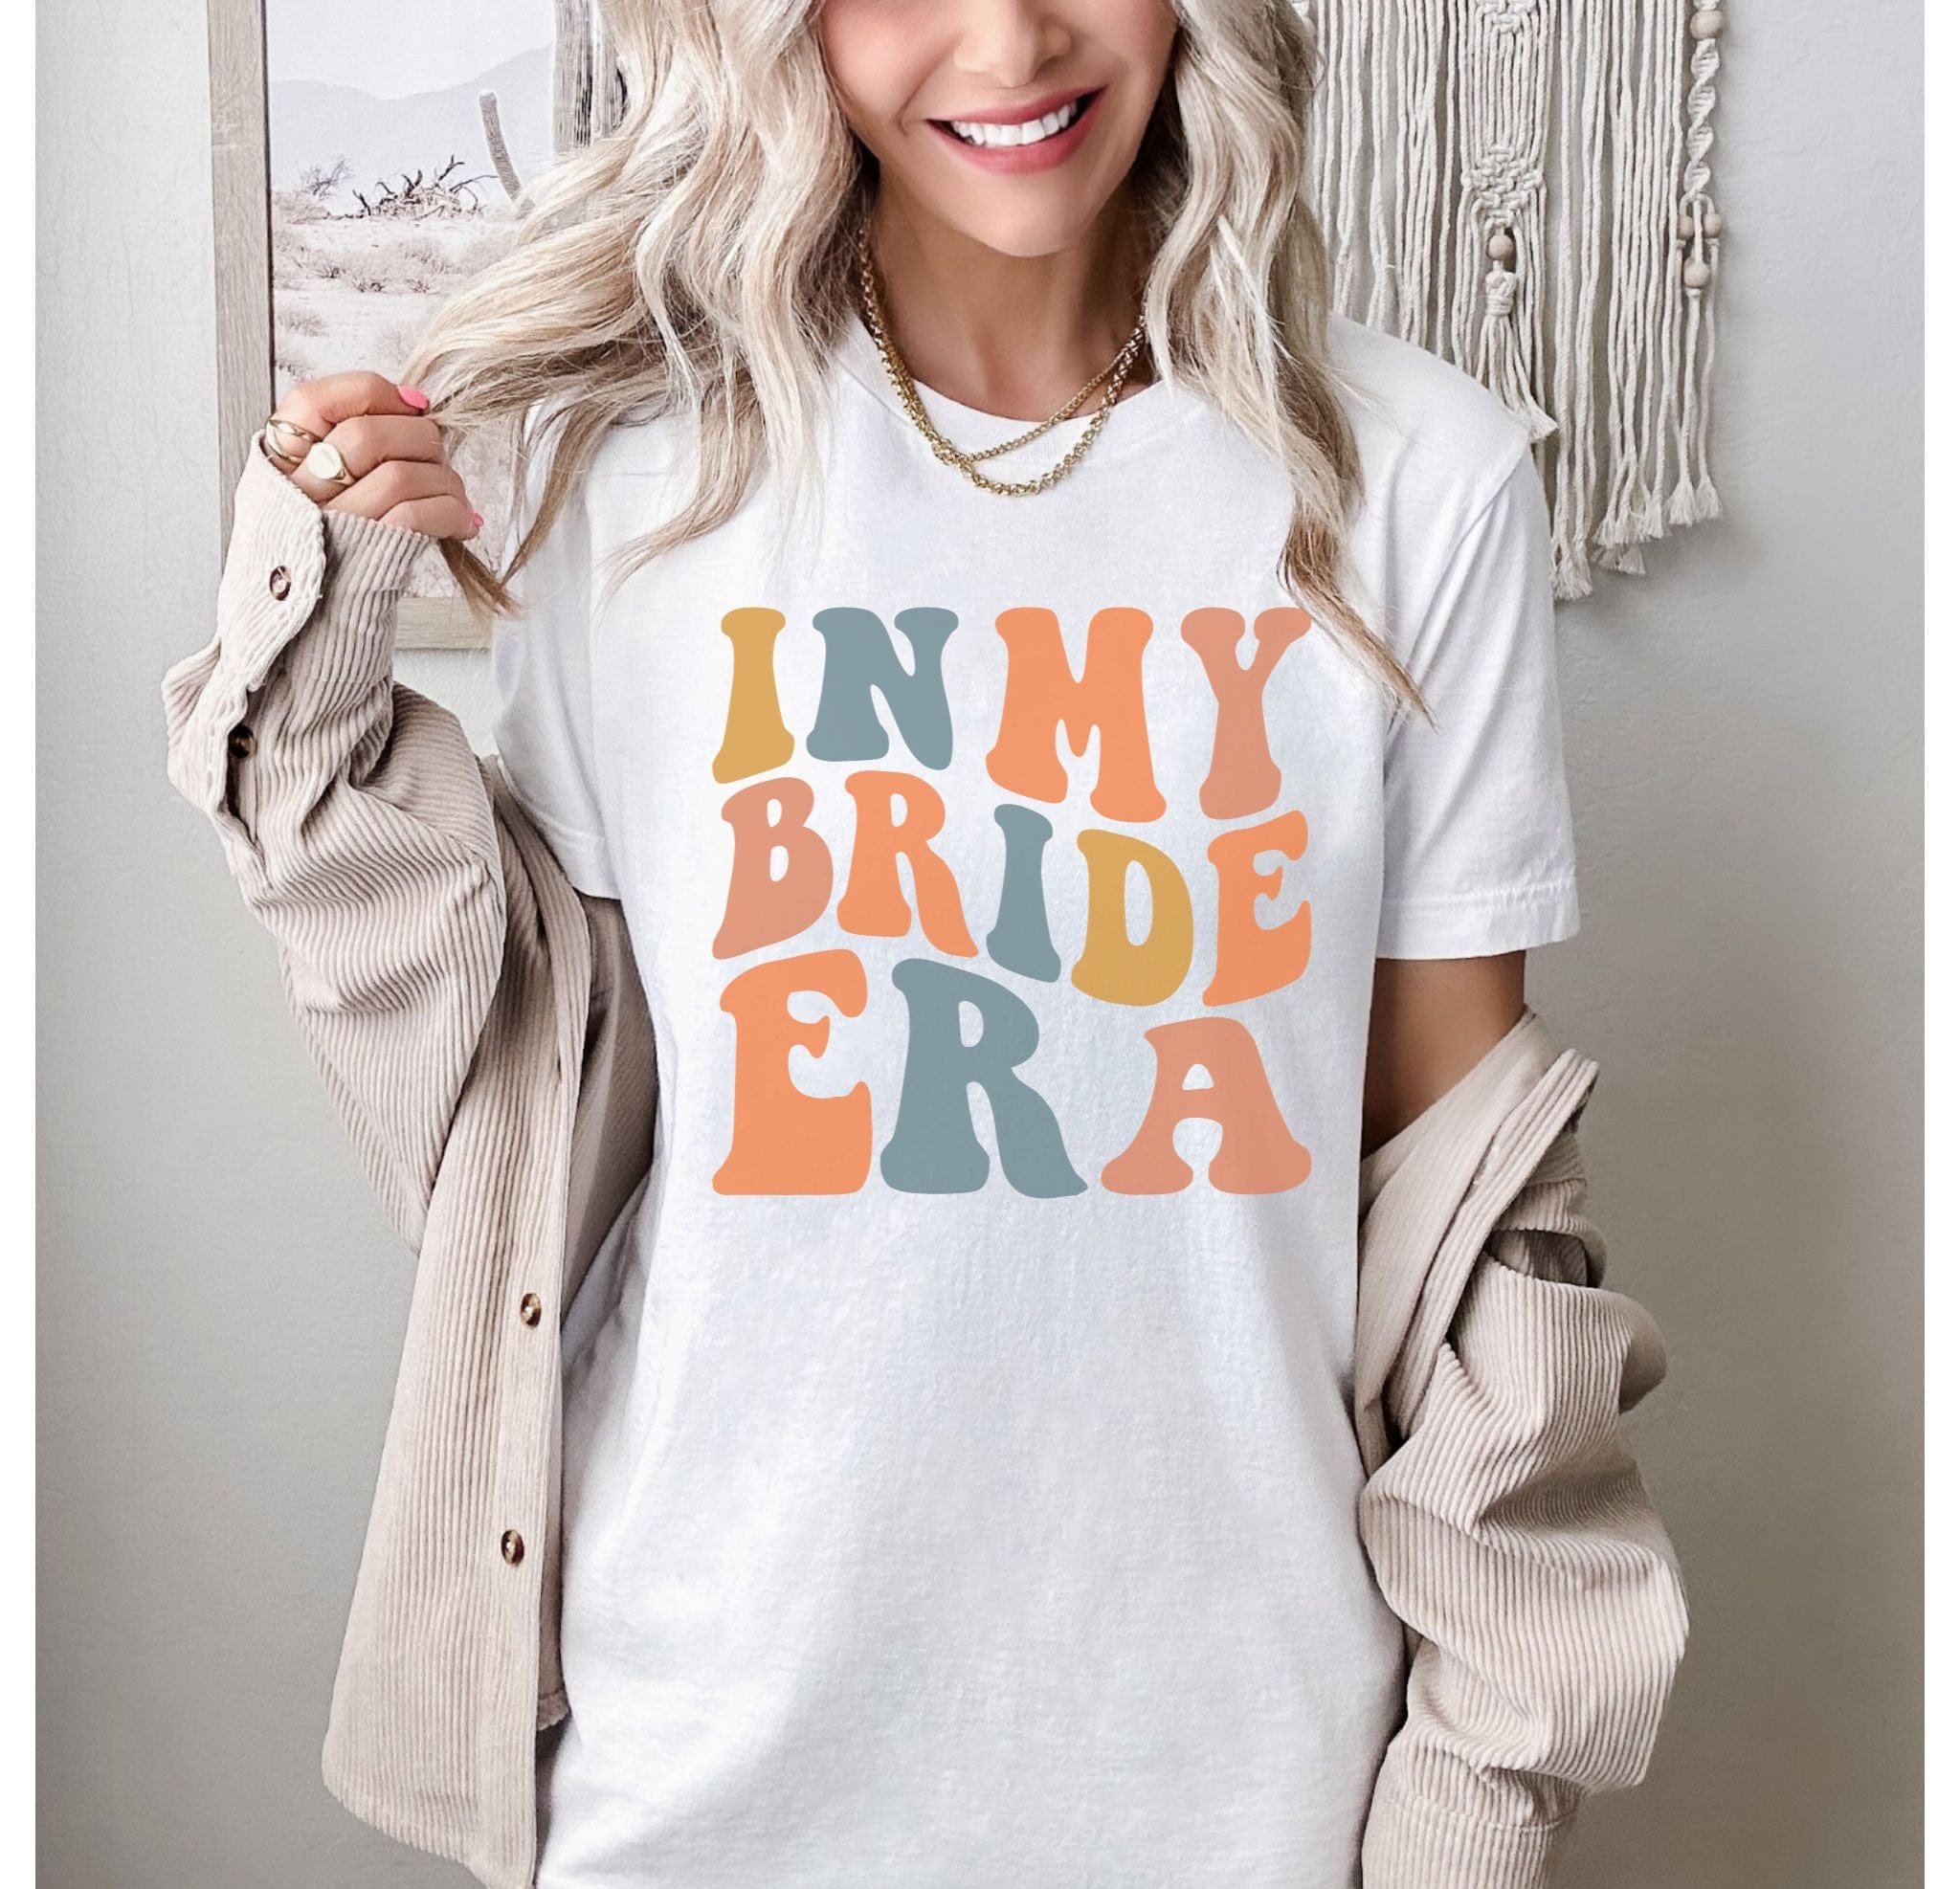 Bride Era T-Shirt